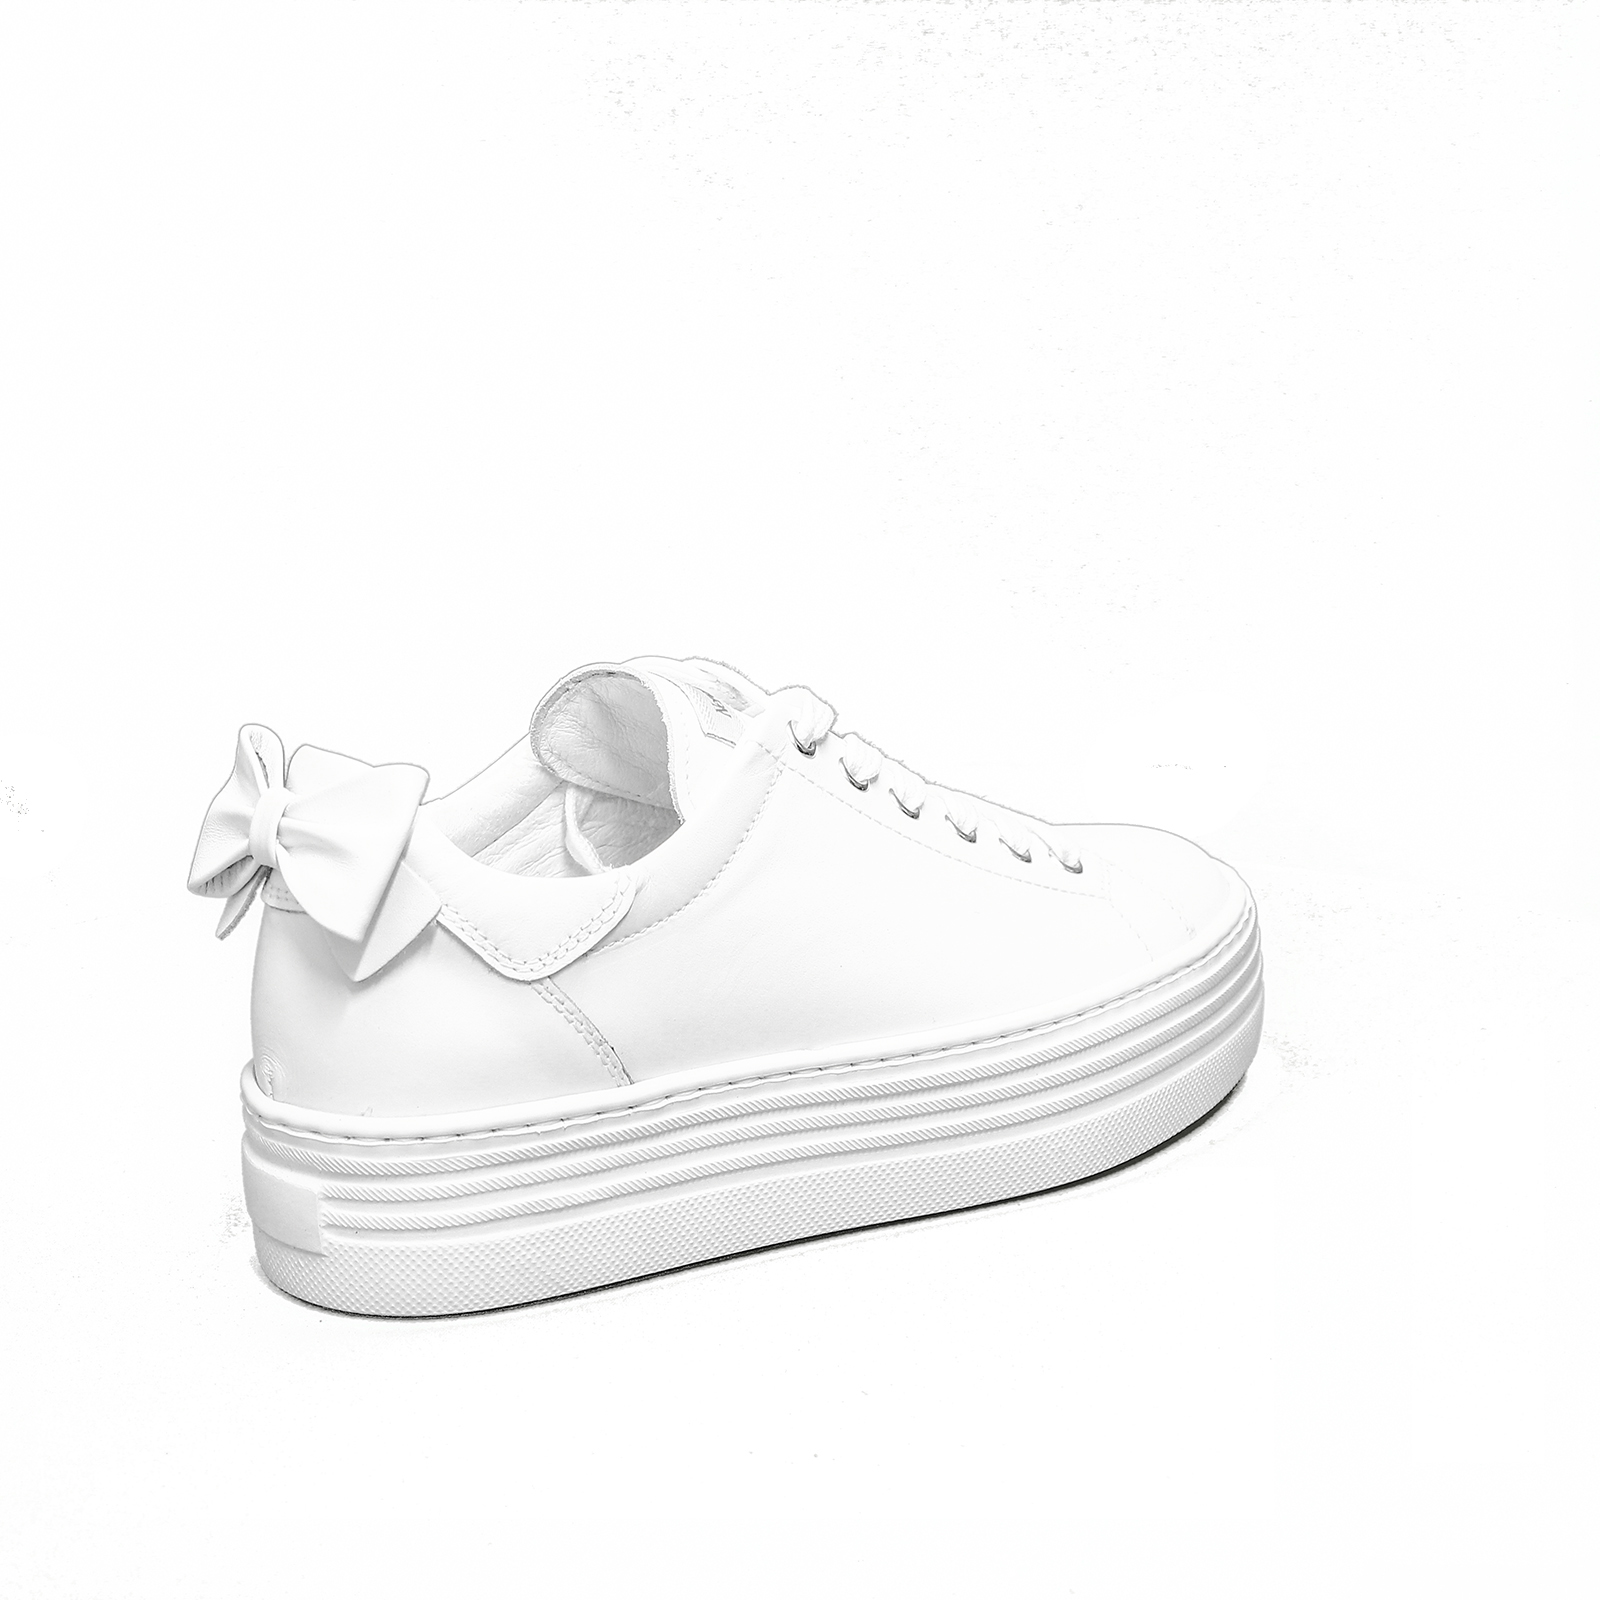 Nerogiardini Damen Sneakers Turnschuhe Freizeit E010700d-707 Weiß White Neu 